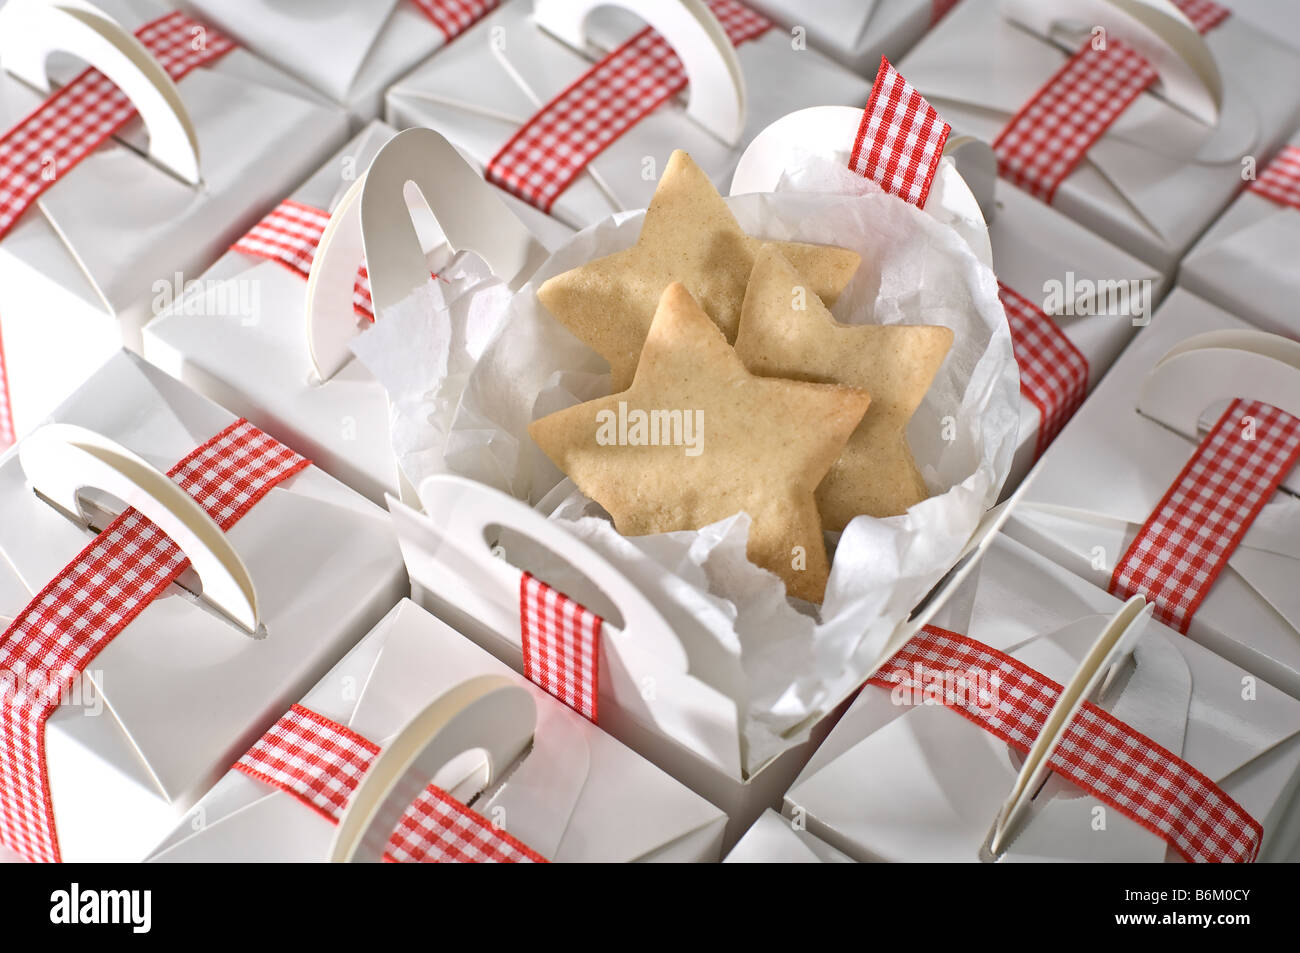 Sterne geformten Ausschnitt Kekse in einfache schlichte weiße Boxen für verpackt präsentiert zu Weihnachten. Gefesselt mit rot karierte Schleife Stockfoto